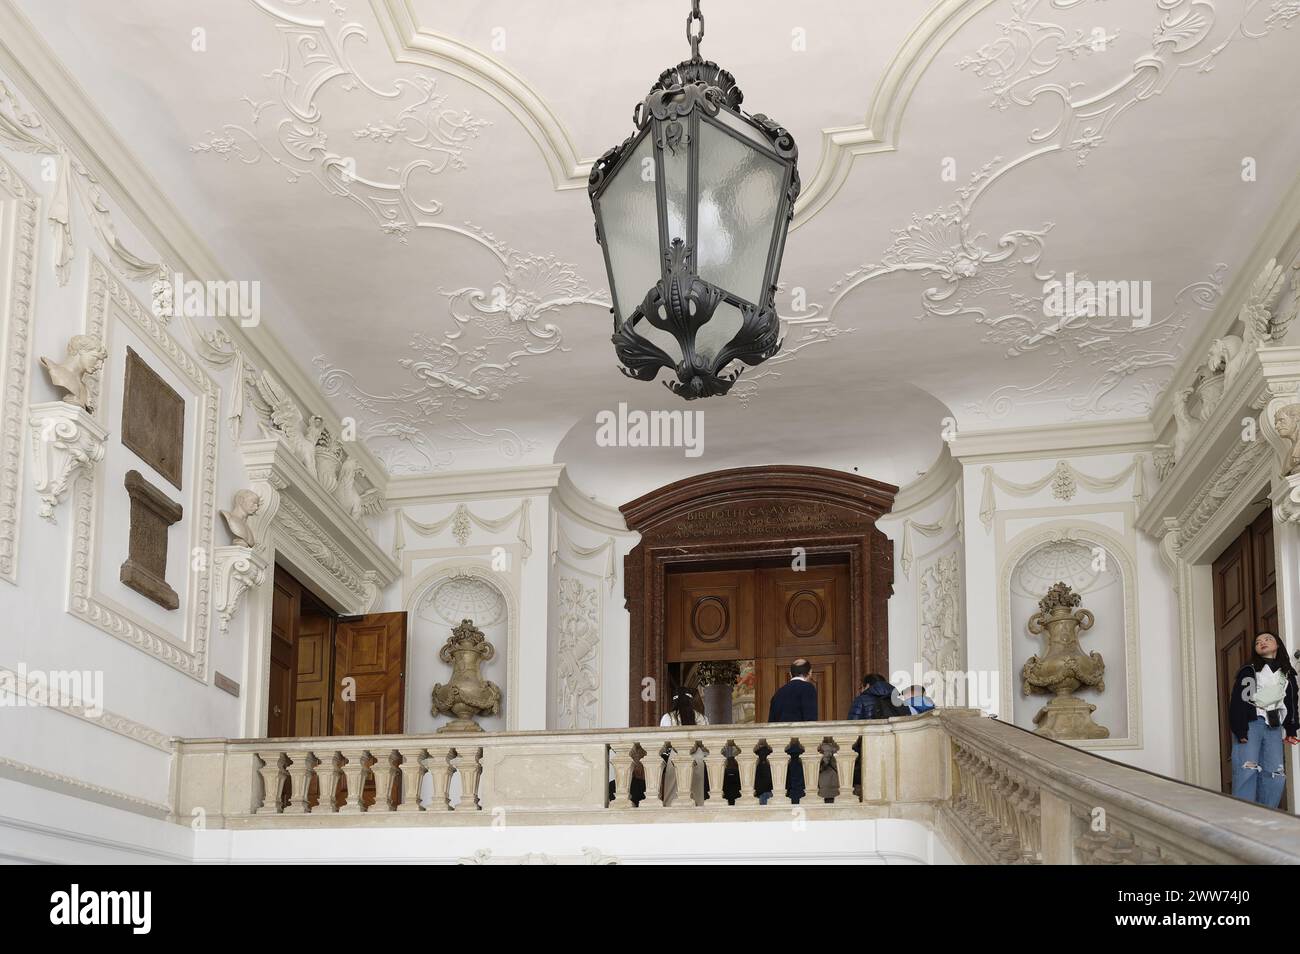 Vienna, Austria. La sala di stato barocca della Biblioteca Nazionale austriaca nella Hofburg di Vienna ospitava la biblioteca di corte. Pietre con iscrizioni dell'epoca romana Foto Stock